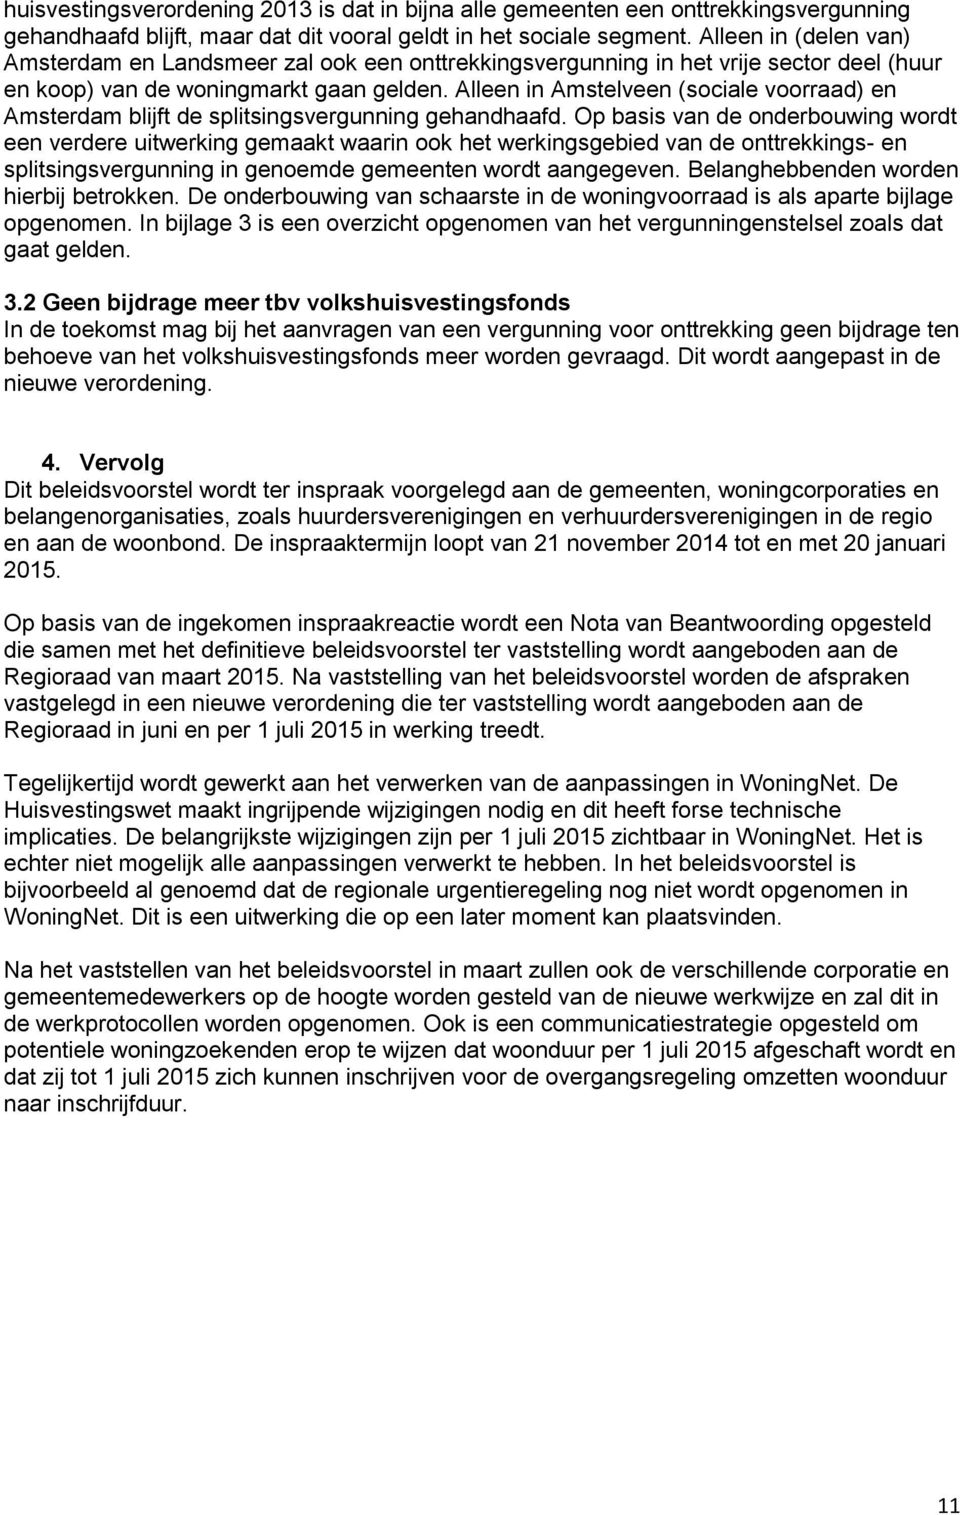 Alleen in Amstelveen (sociale voorraad) en Amsterdam blijft de splitsingsvergunning gehandhaafd.